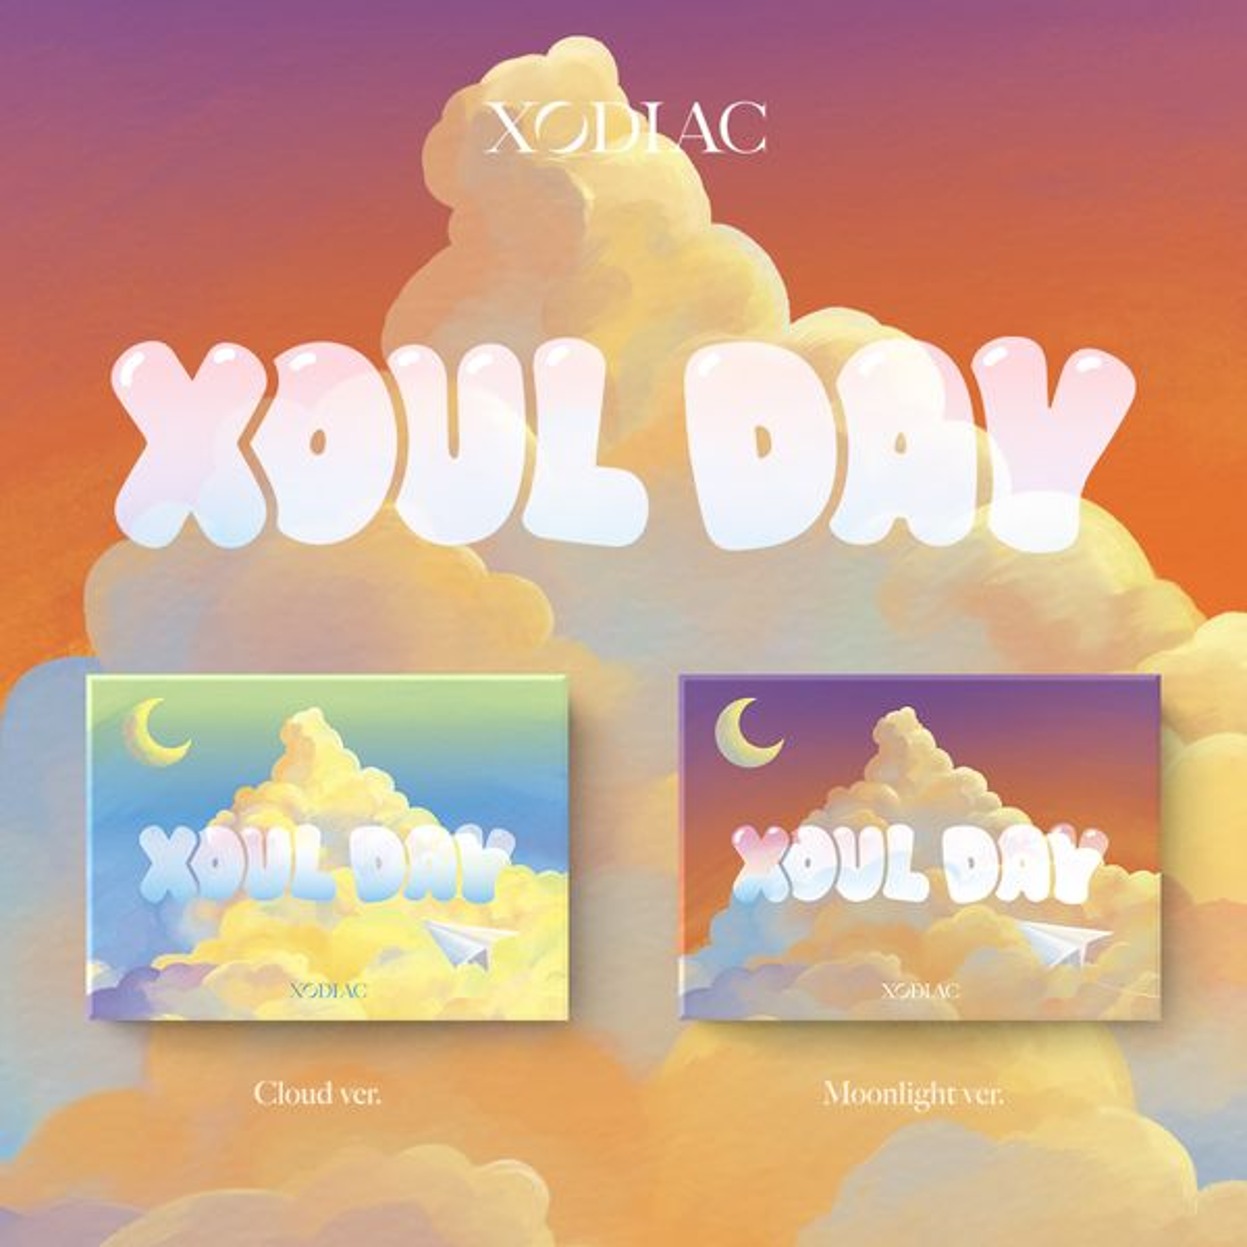 ソディレック(XODIAC) - シングルアルバム 2集 [XOUL DAY] (POCAALBUM) (ランダムバージョン)